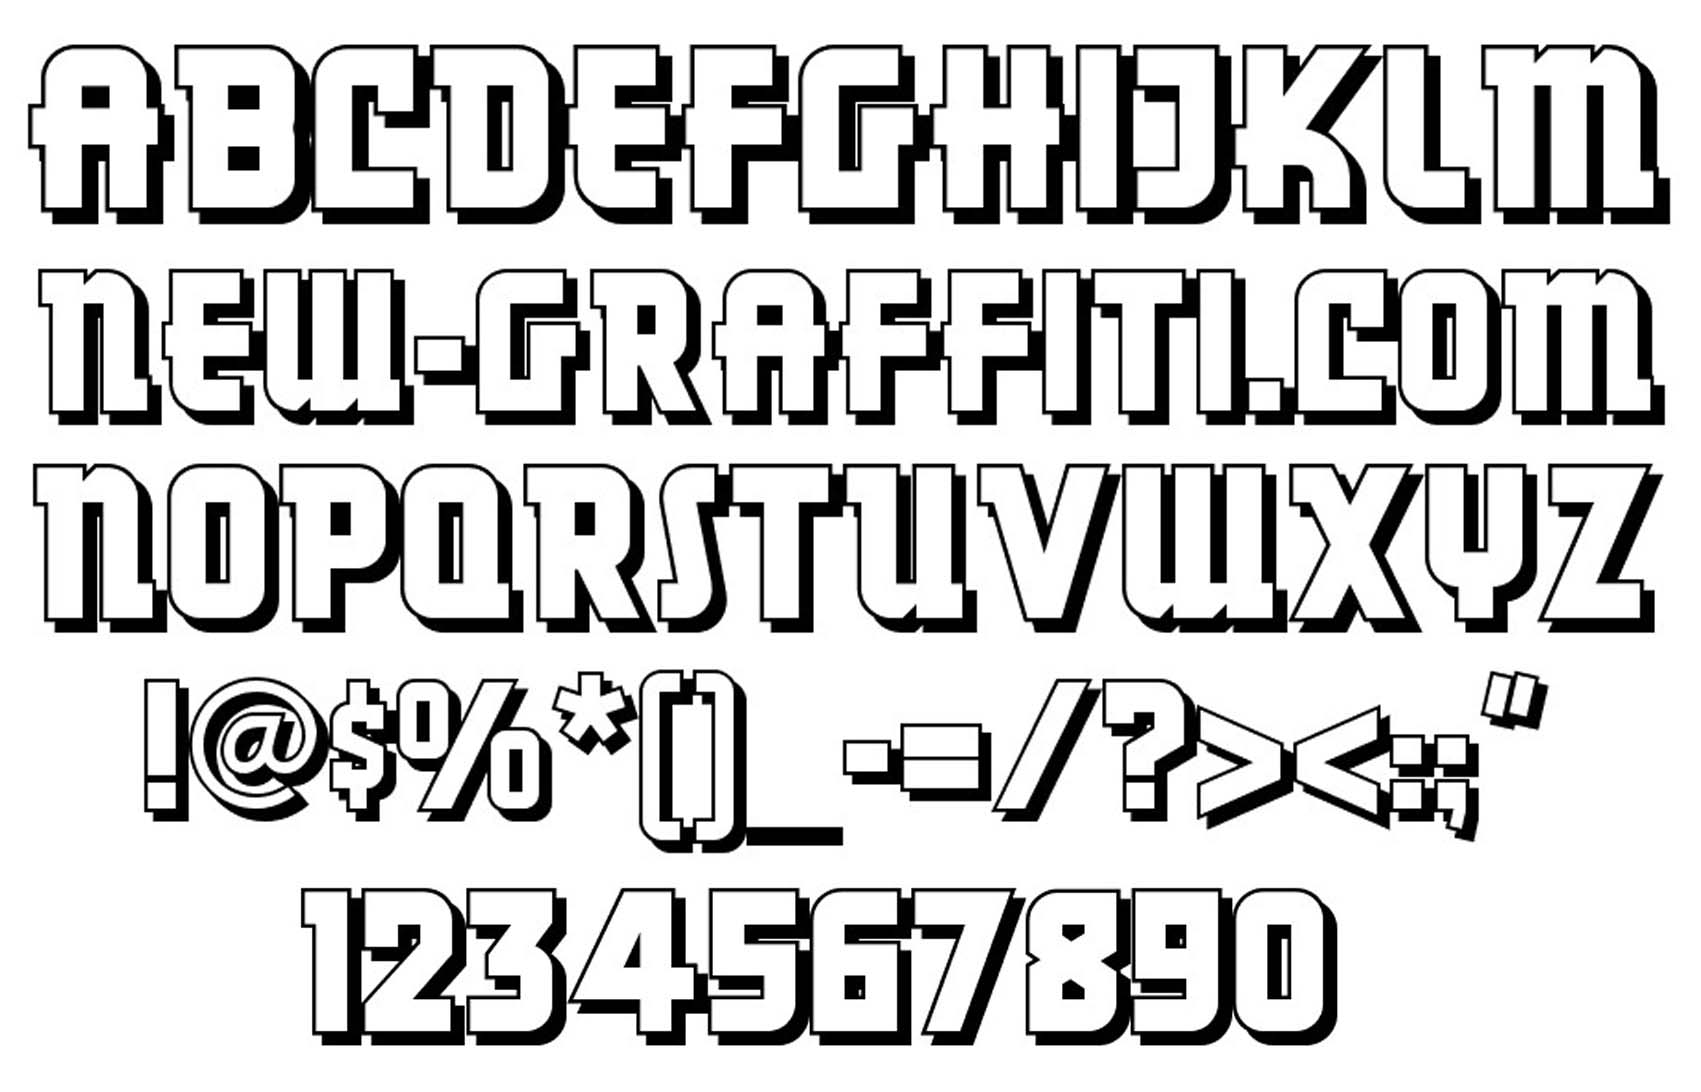 15 Alphabet Fonts Free Downloads Images - Designer Fonts Free Download